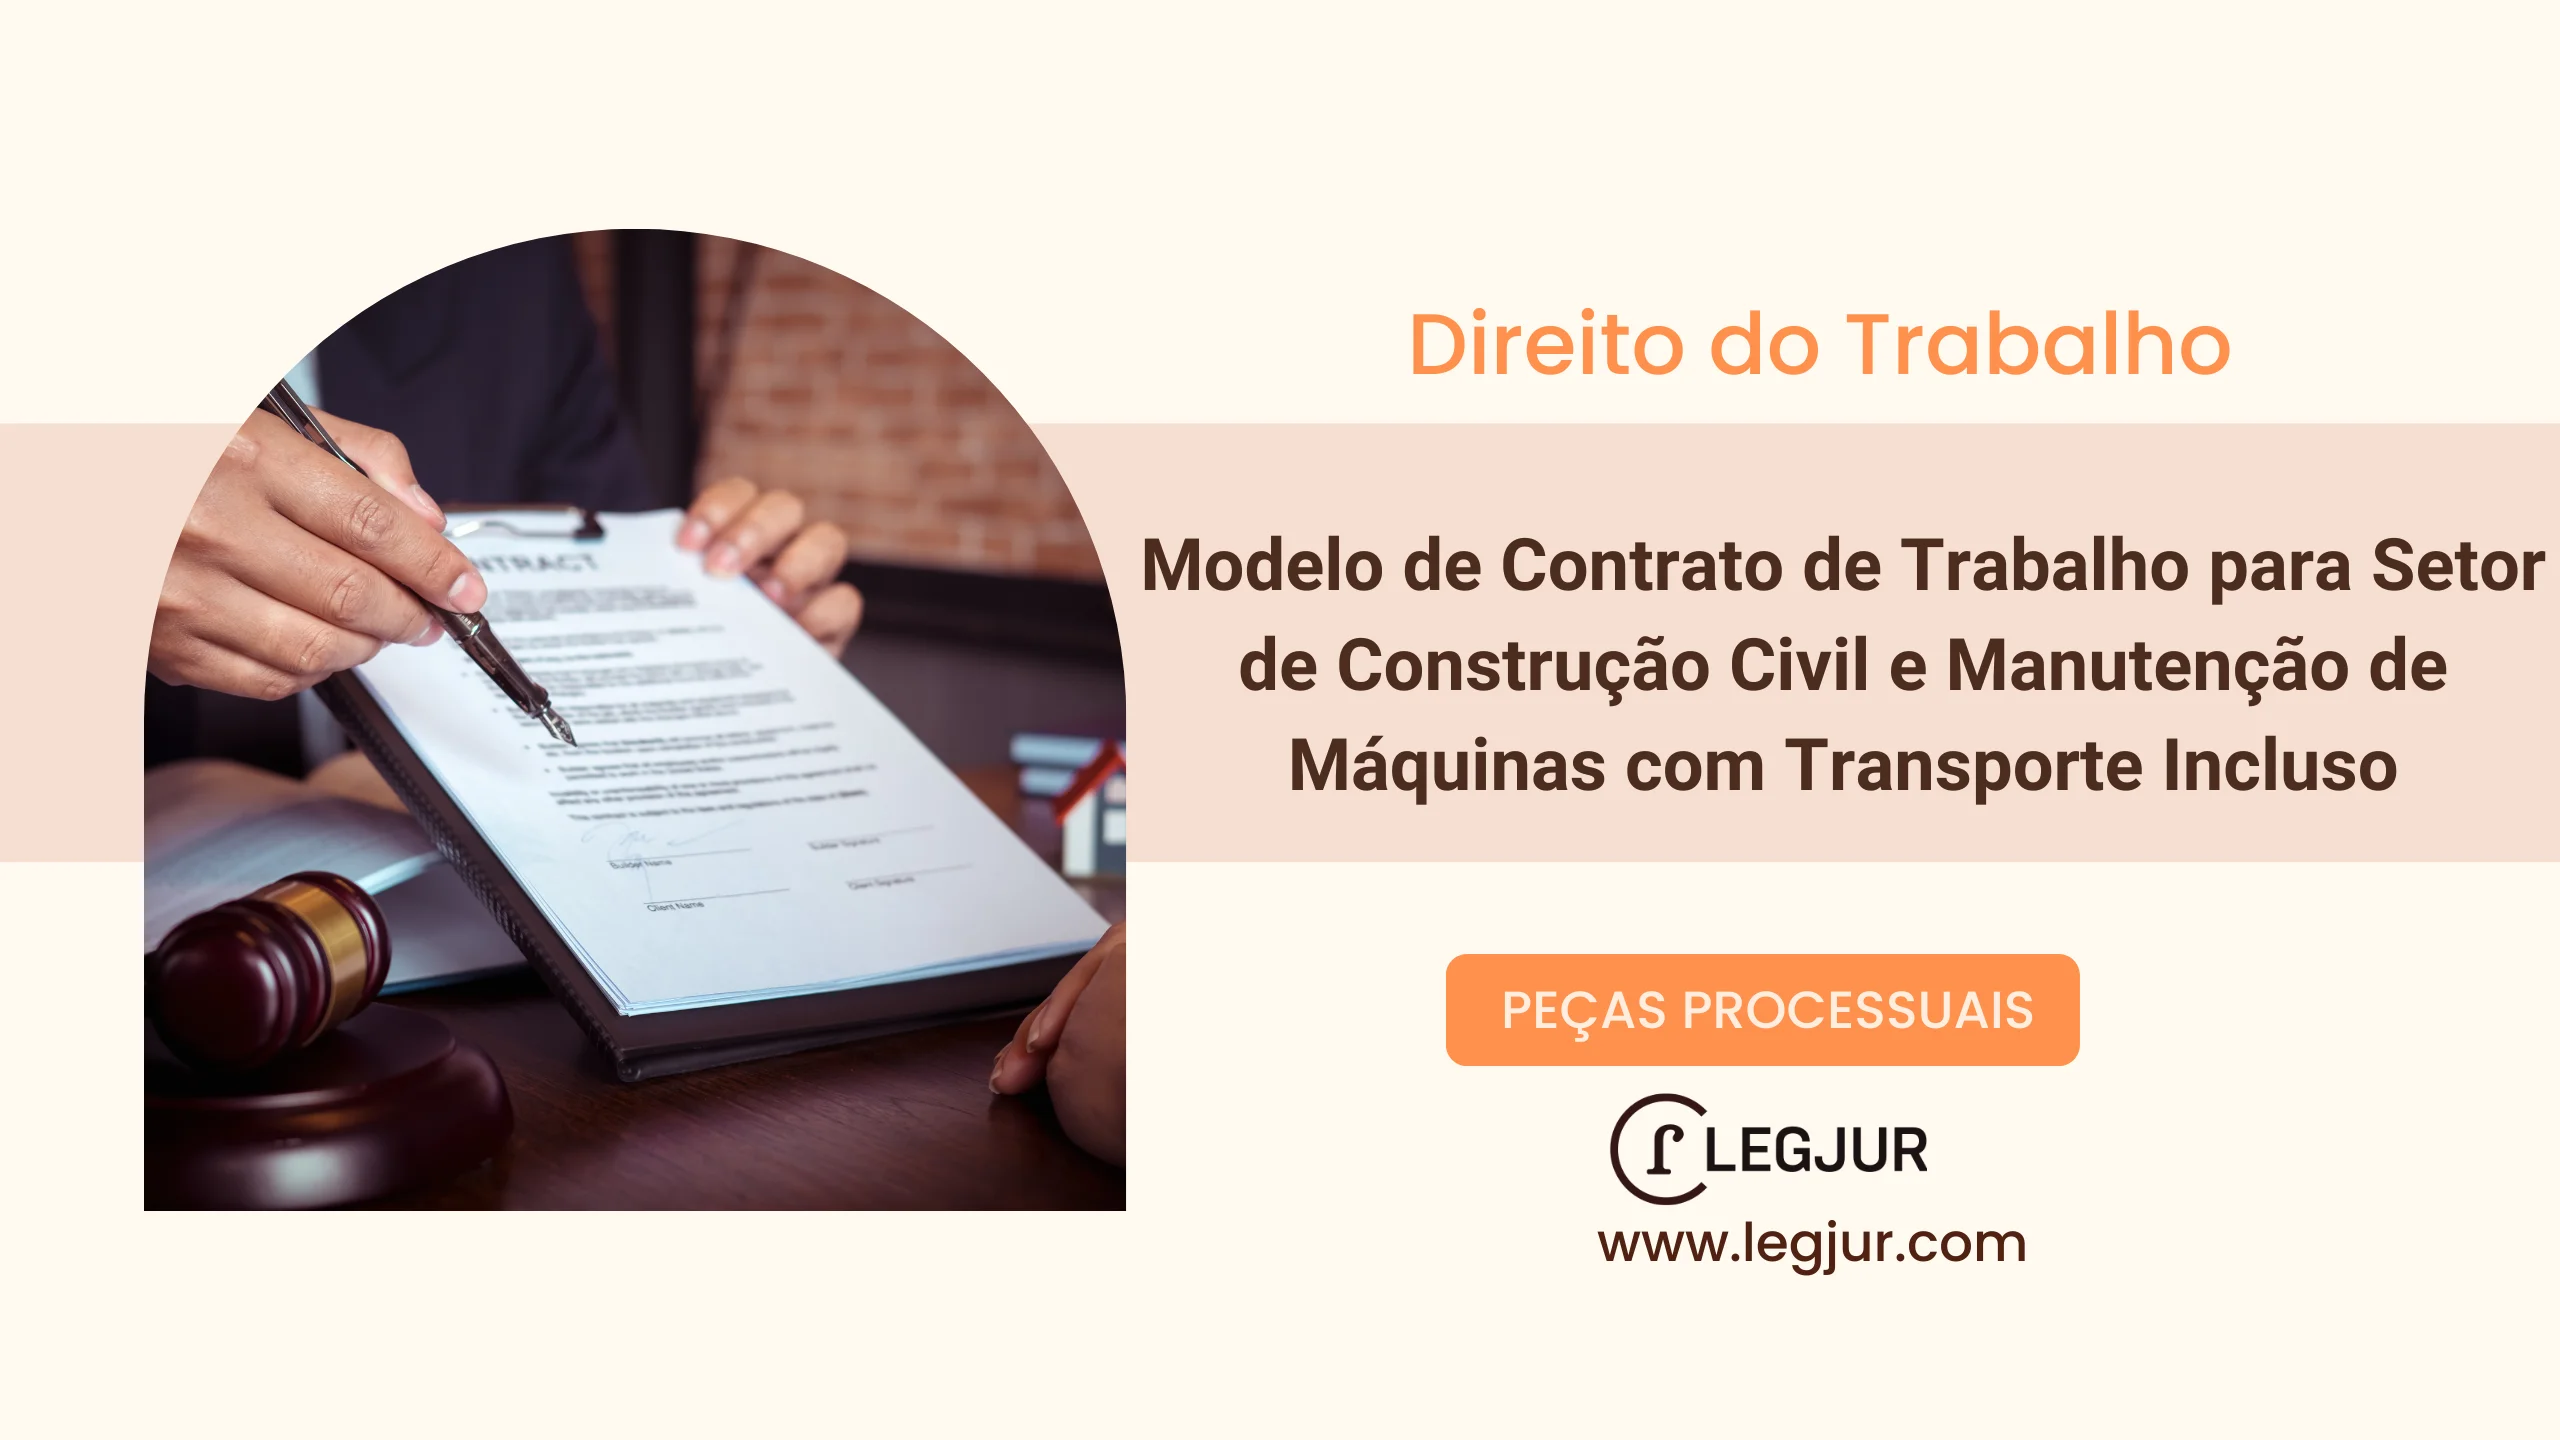 Modelo de Contrato de Trabalho para Setor de Construção Civil e Manutenção de Máquinas com Transporte Incluso